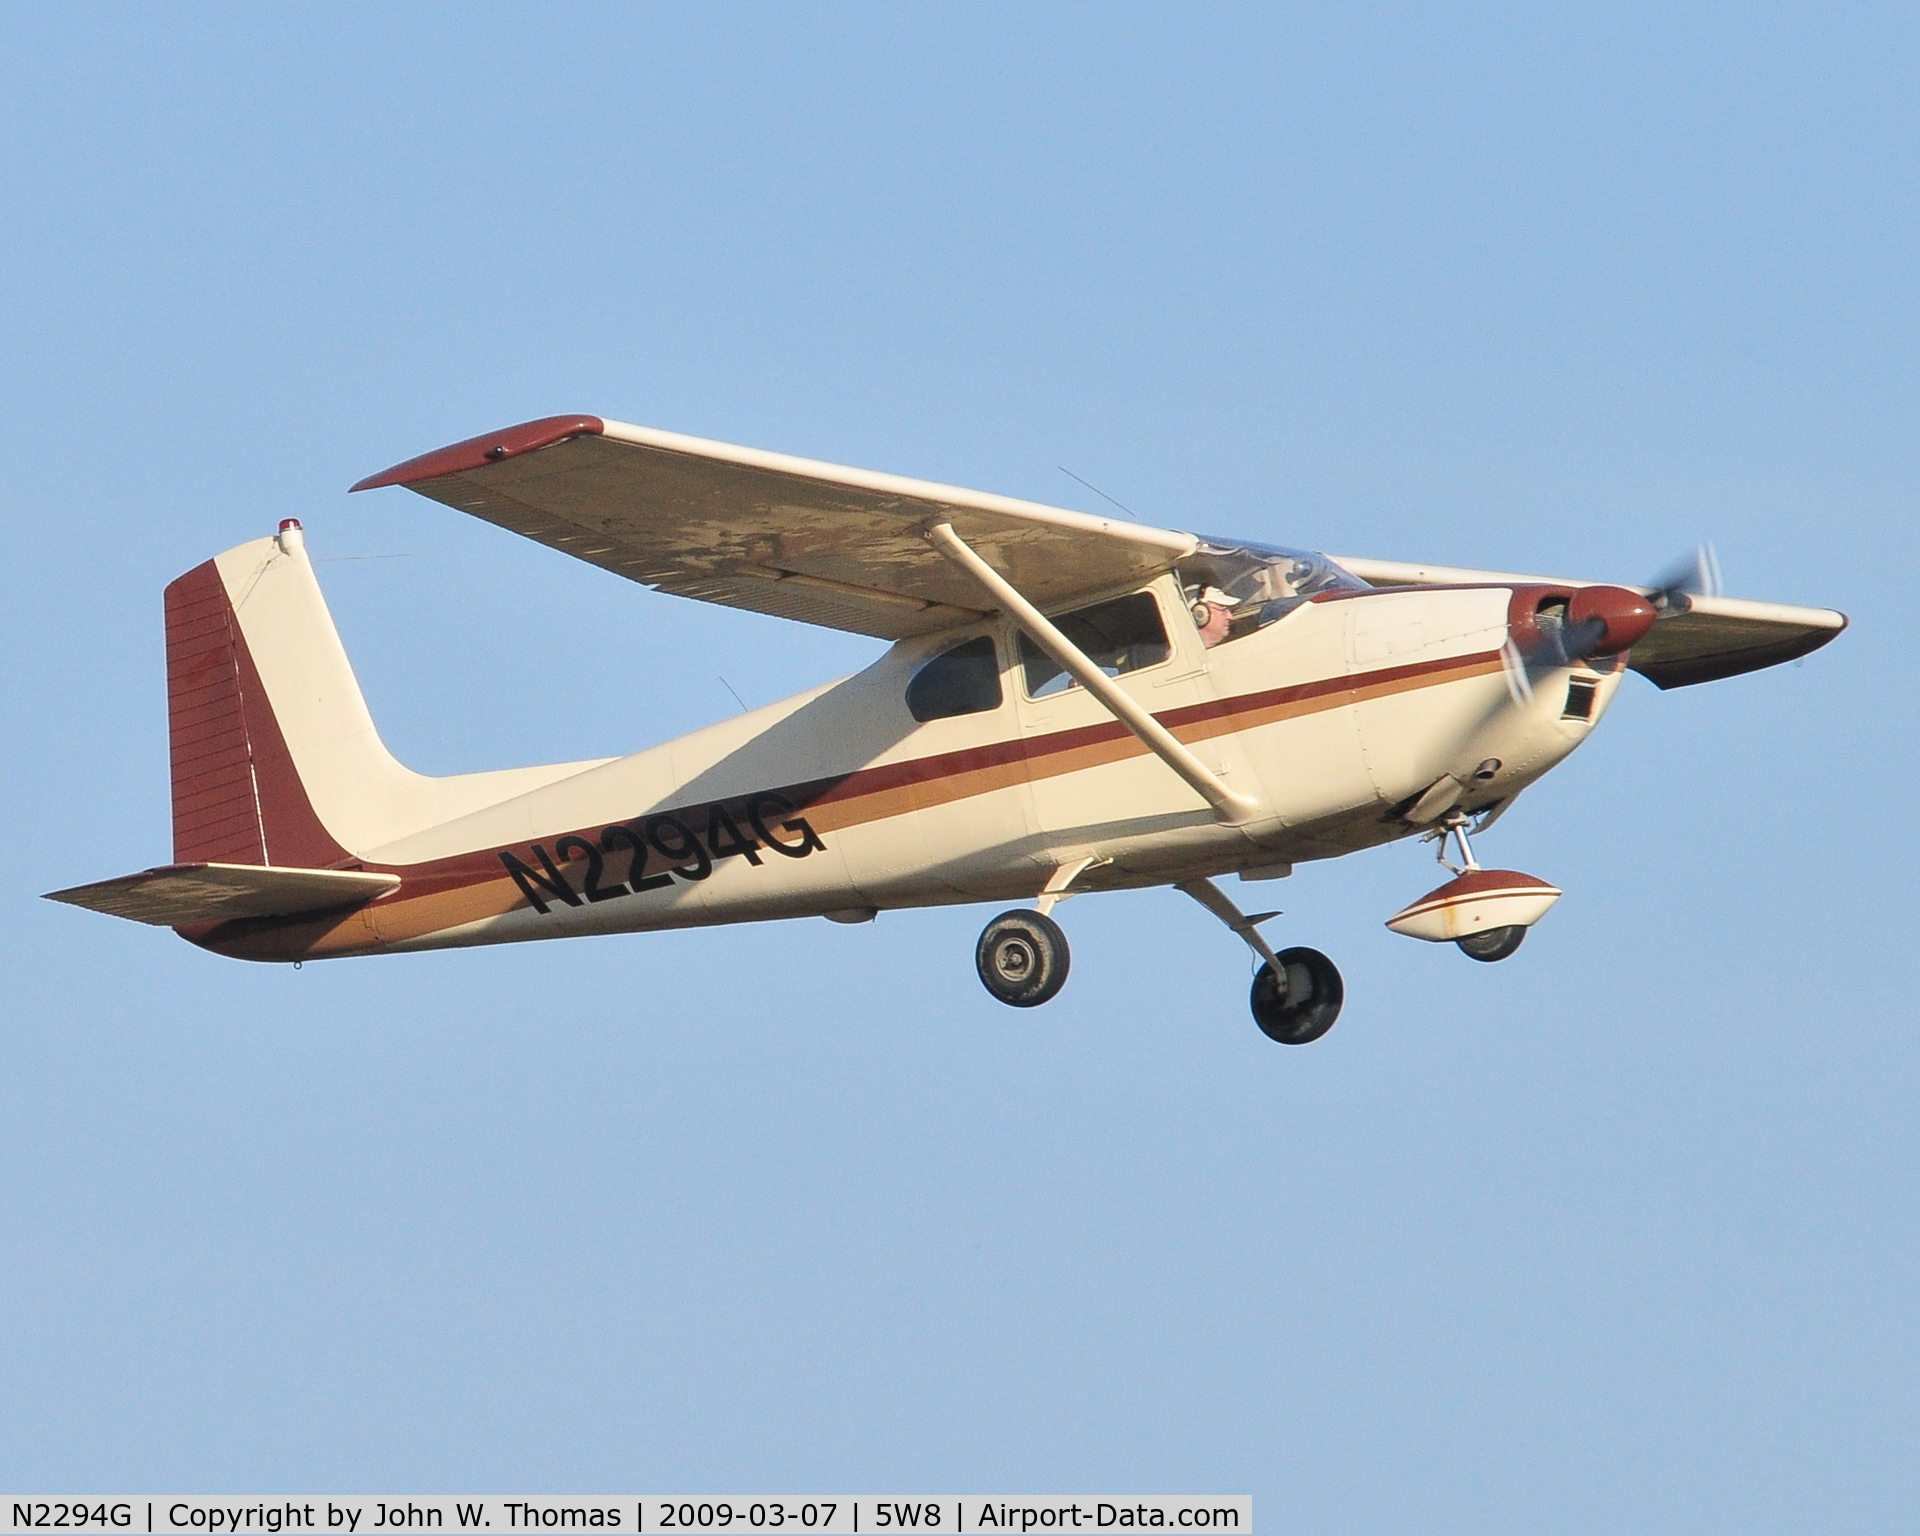 N2294G, 1958 Cessna 182B Skylane C/N 51594, Departing runway 22